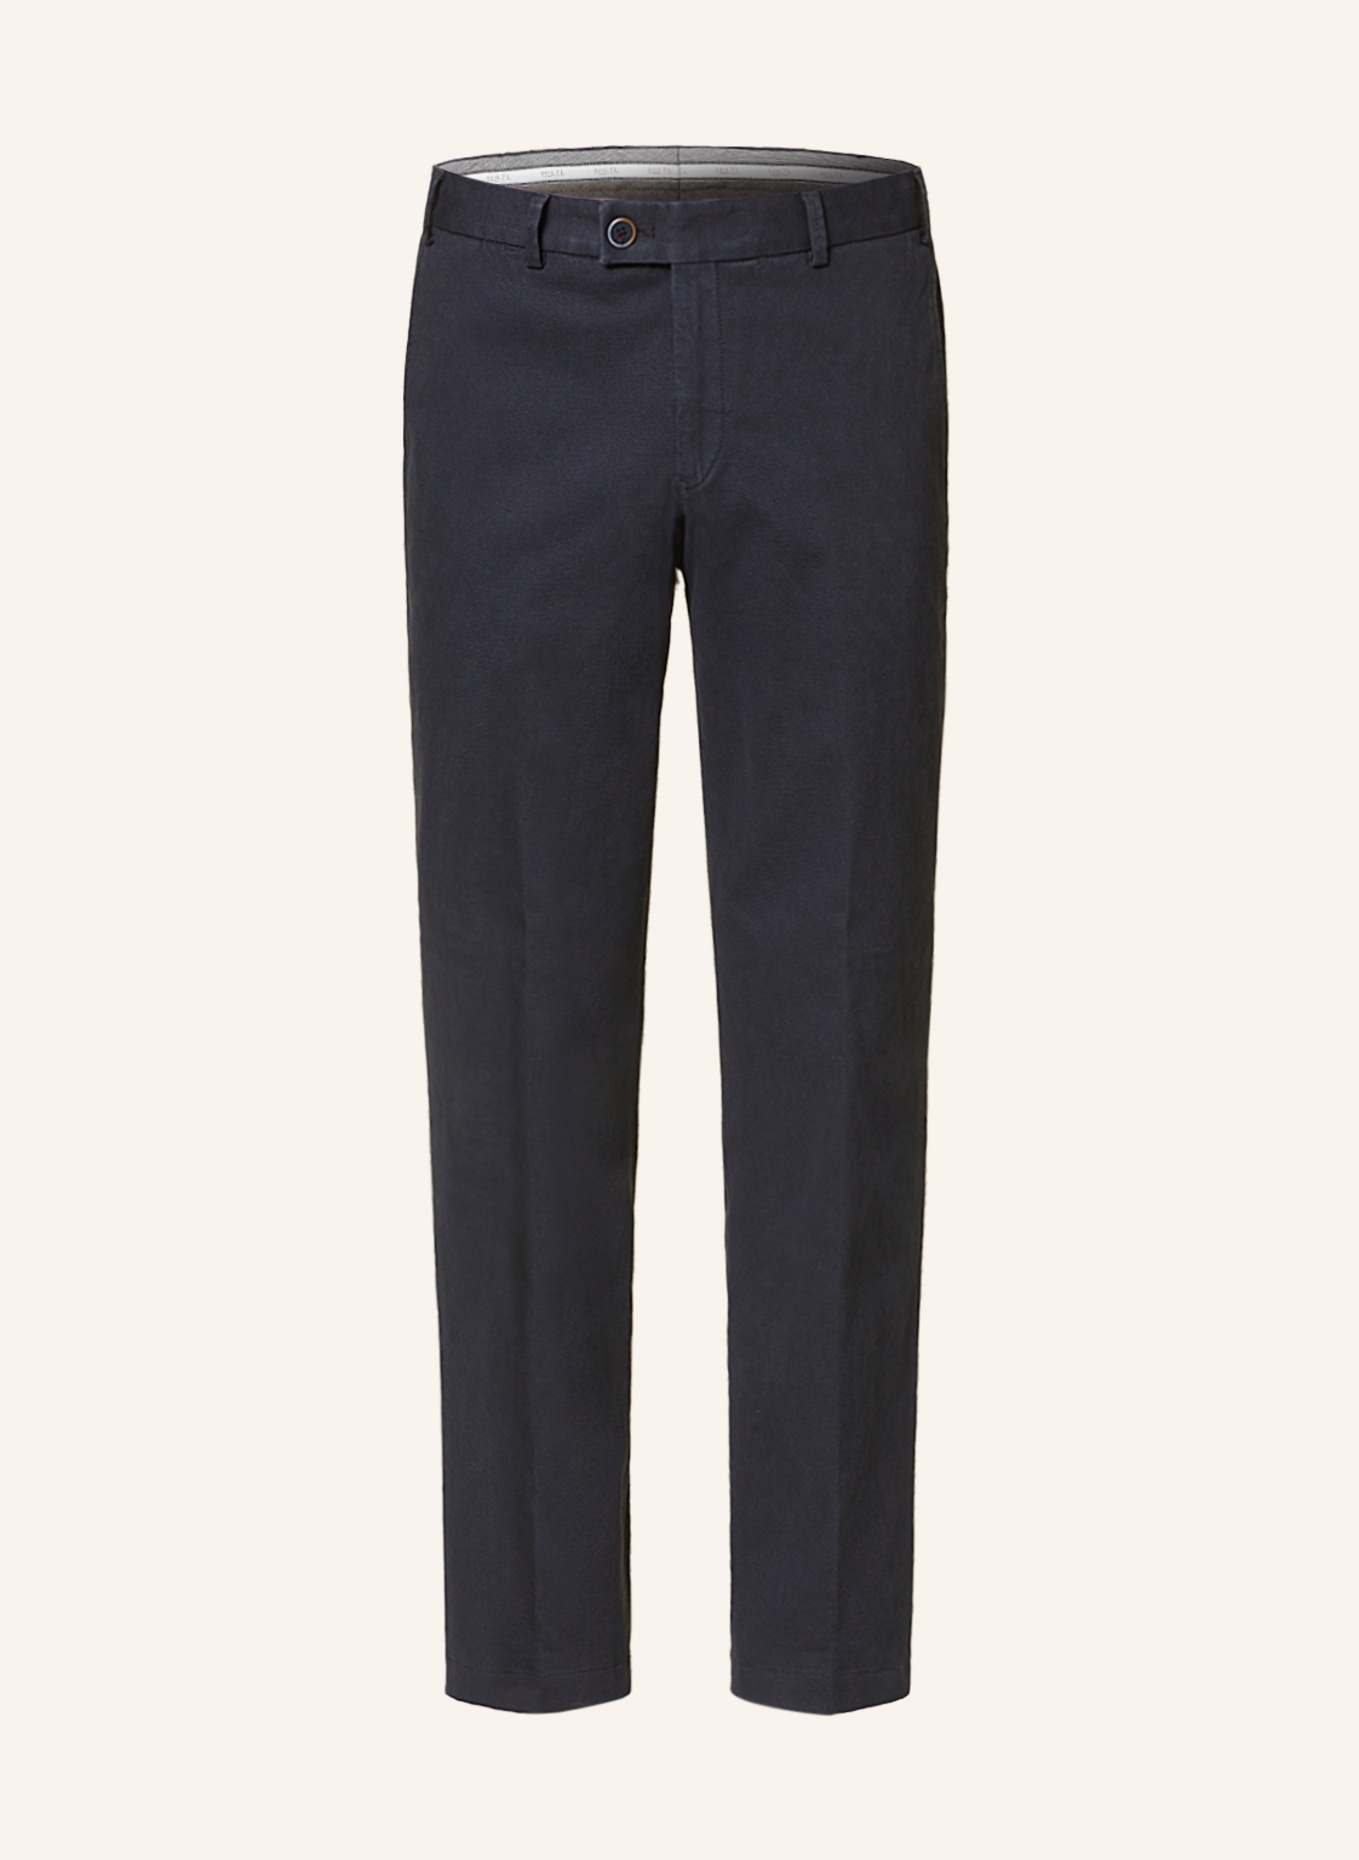 HILTL Trousers regular fit, Color: DARK BLUE (Image 1)